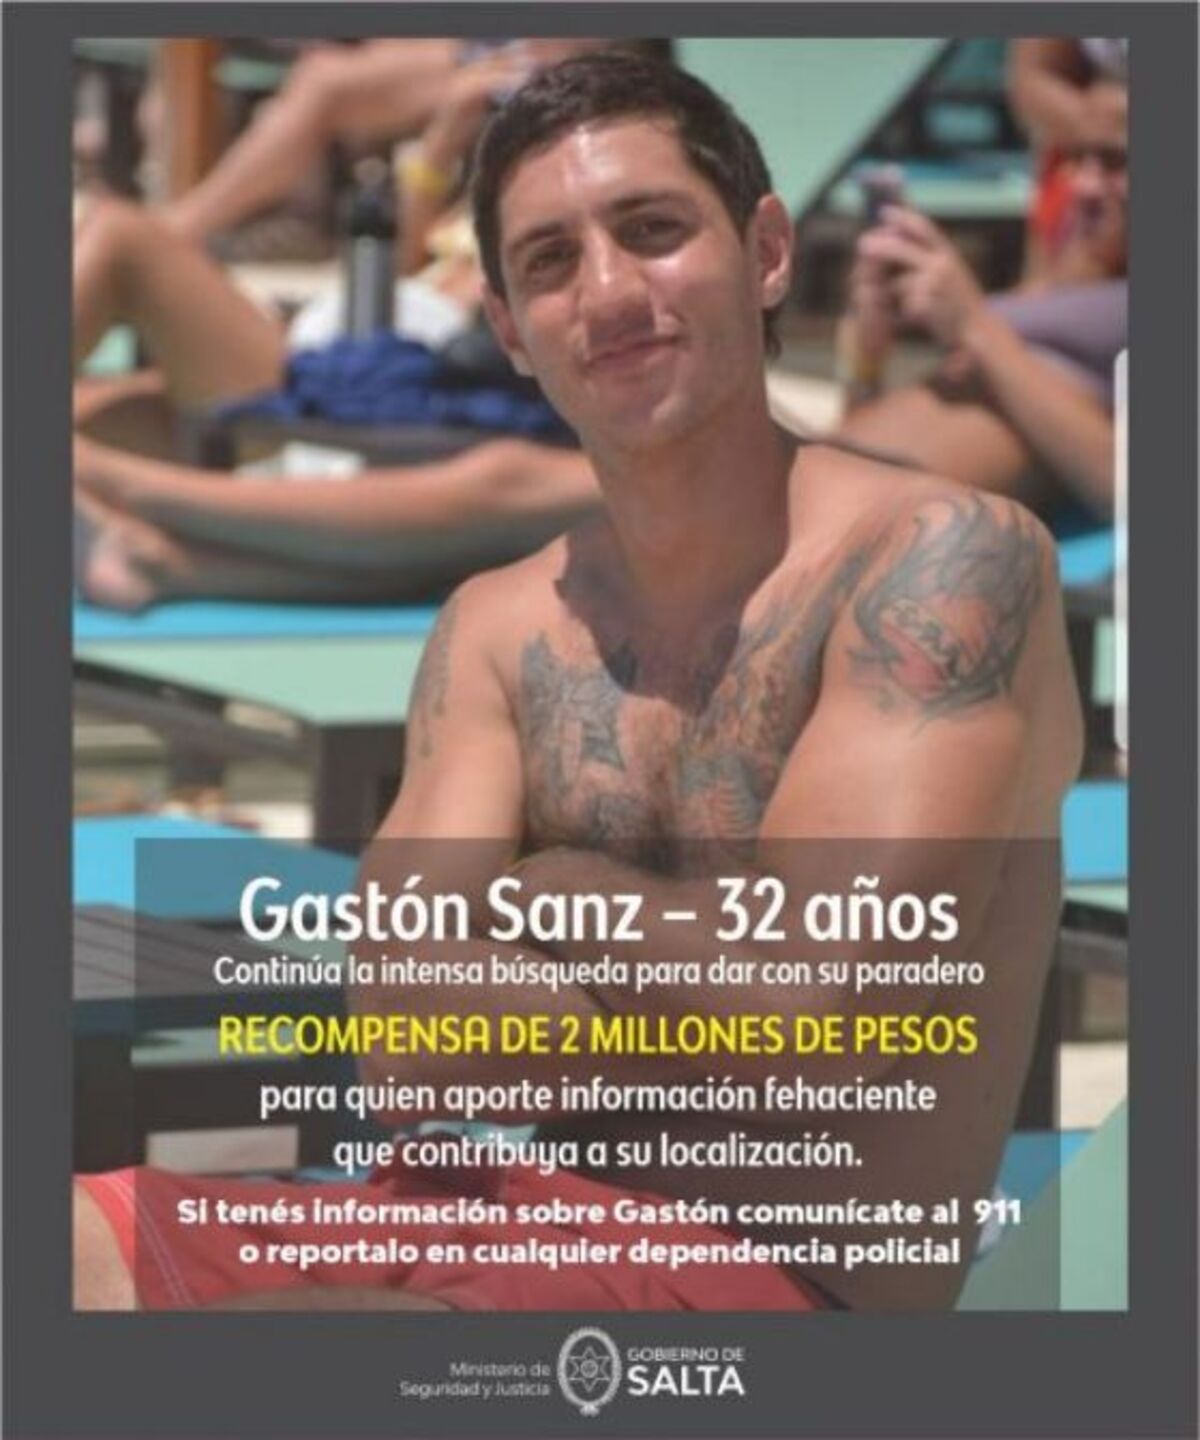 Gastón Sanz